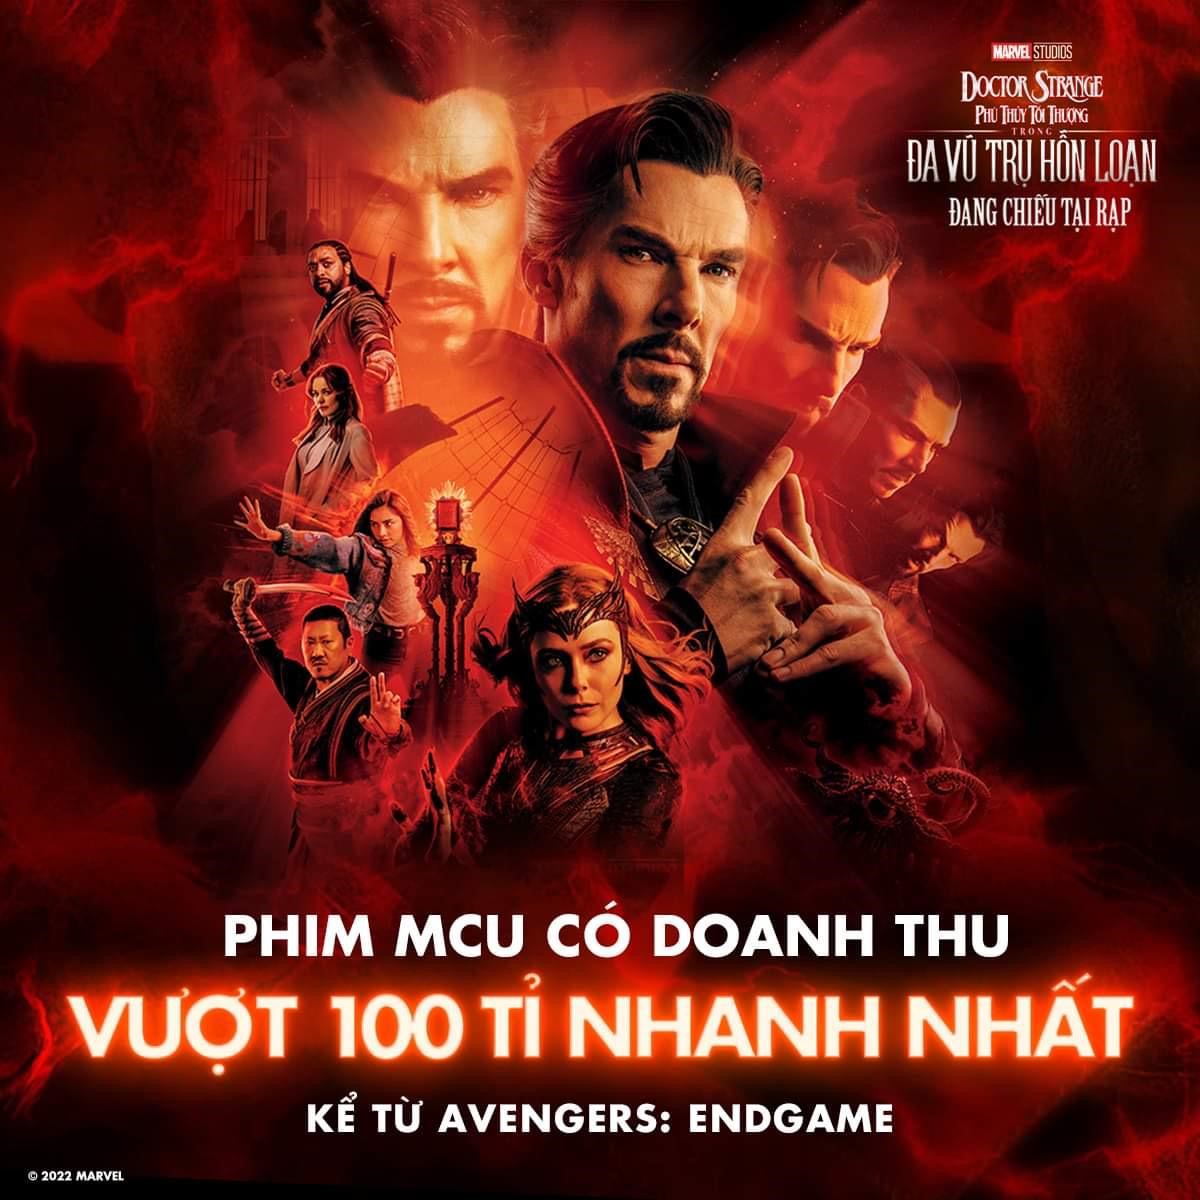 Doctor Strange 2 tổng tấn công phòng vé thế giới, doanh thu lập kỷ lục 100 tỷ đồng tại Việt Nam